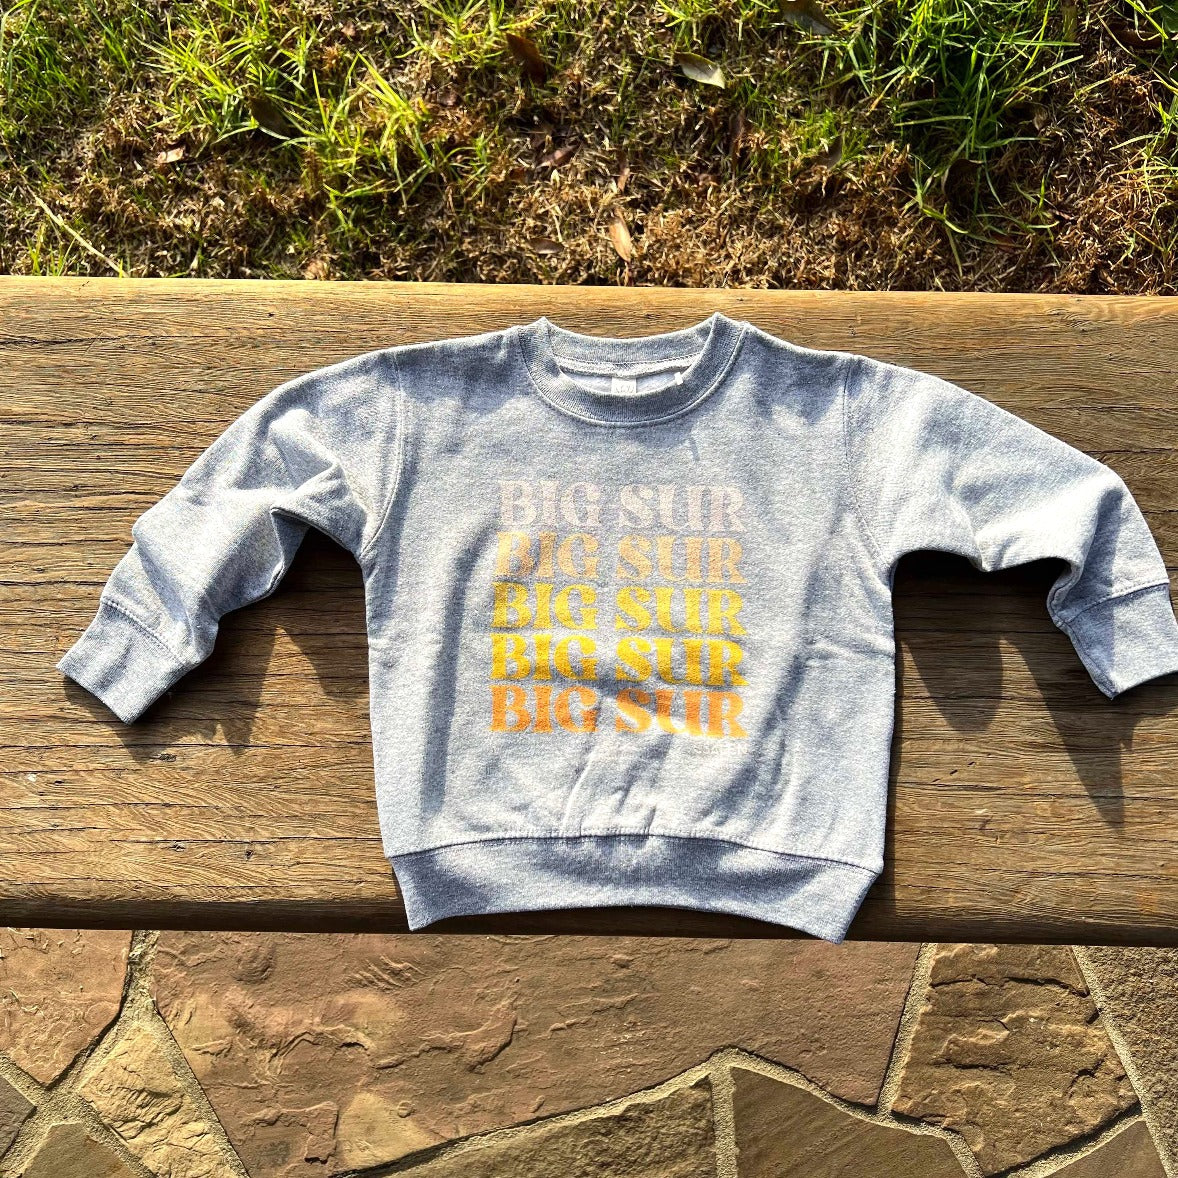 Big Sur Toddler Sweatshirt in Heather Grey, Size 3T